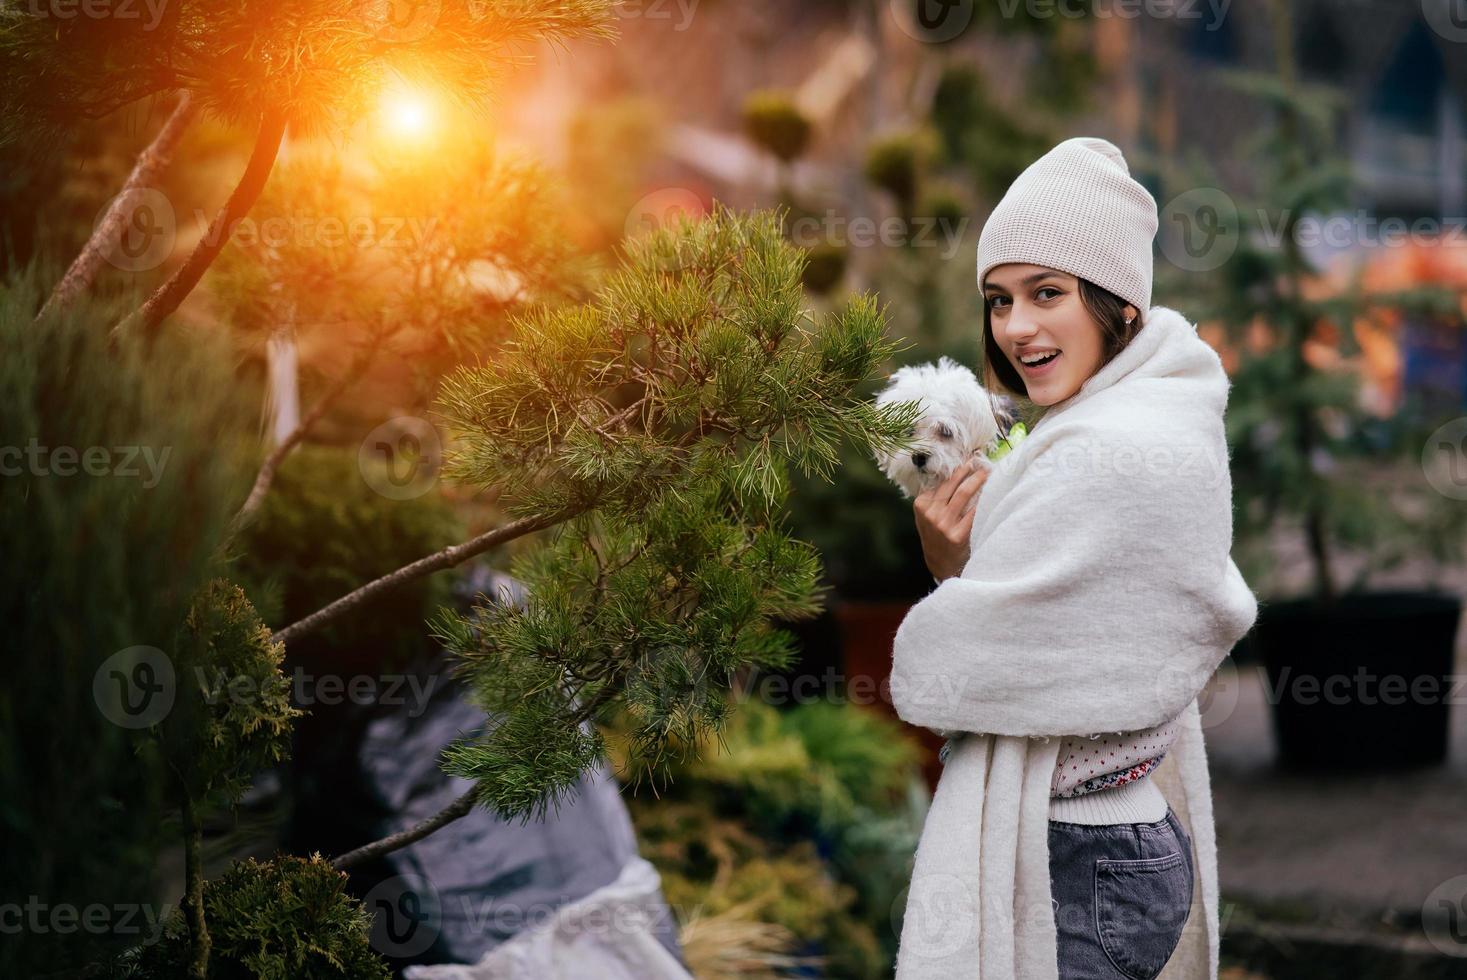 mujer con un perro blanco en sus brazos cerca de árboles de navidad verdes foto